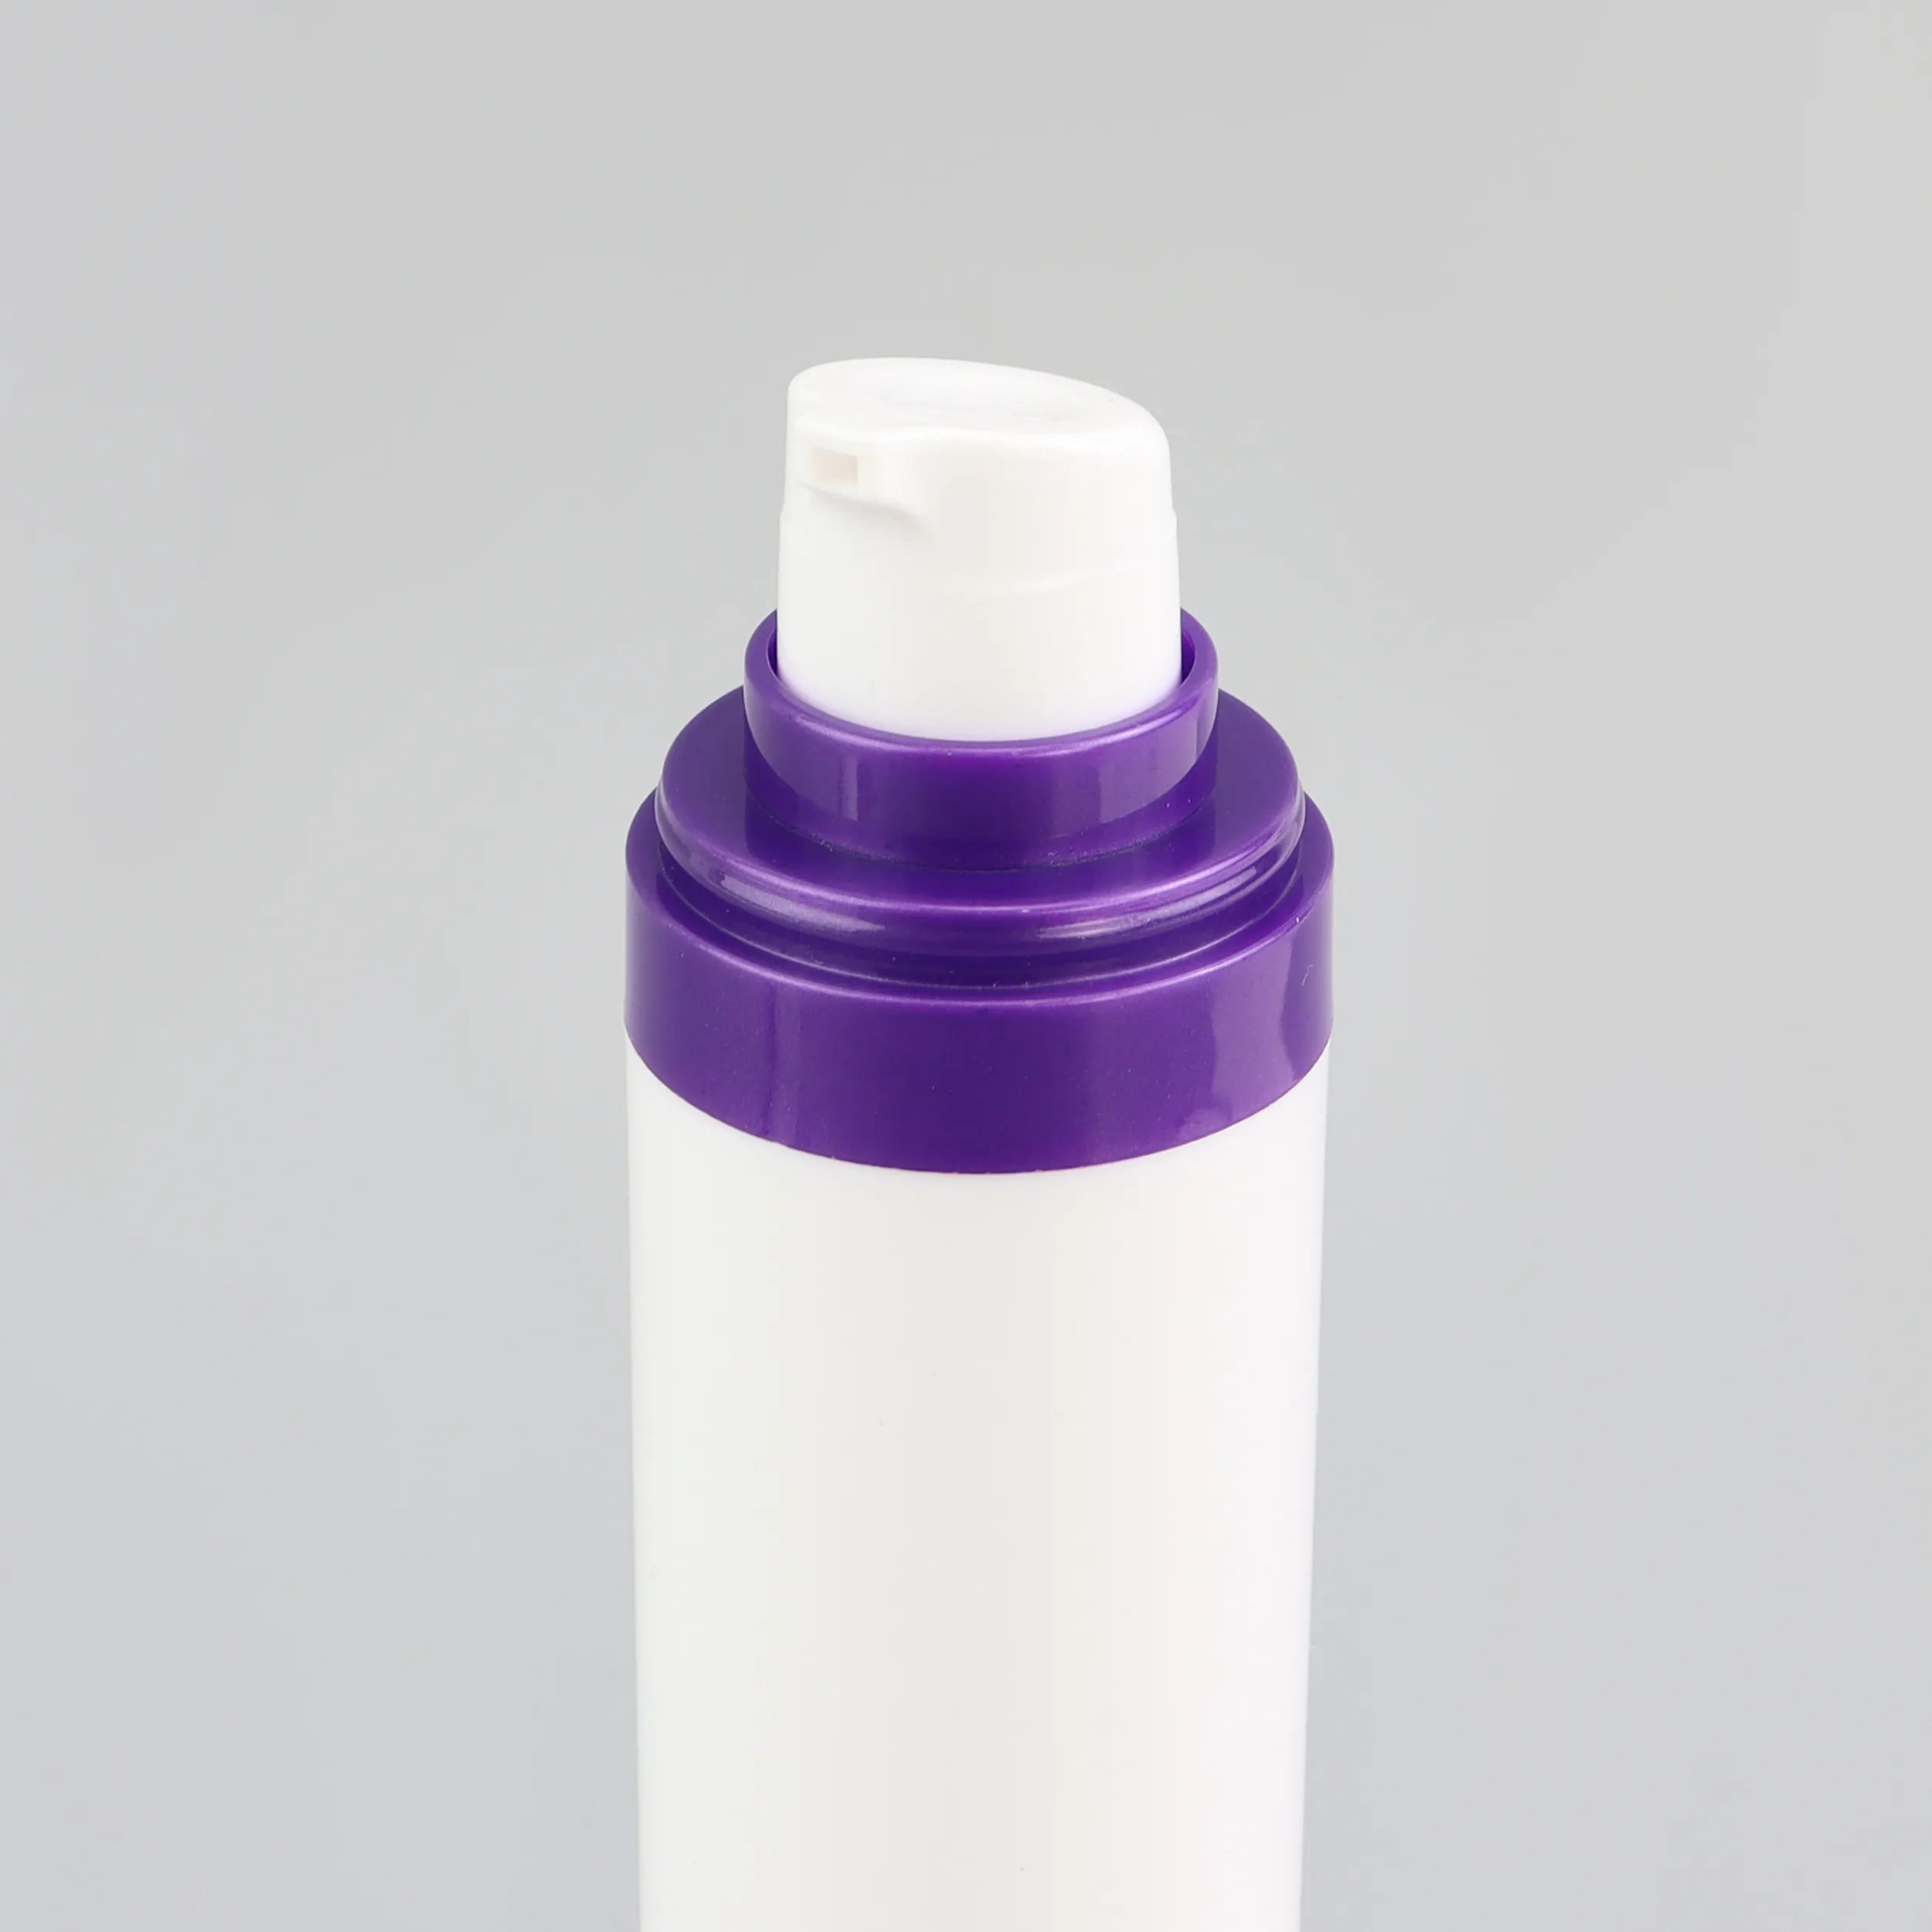 化粧品高級エアレスポンプボトル50mlクリームジャーボトル空のローションボトル